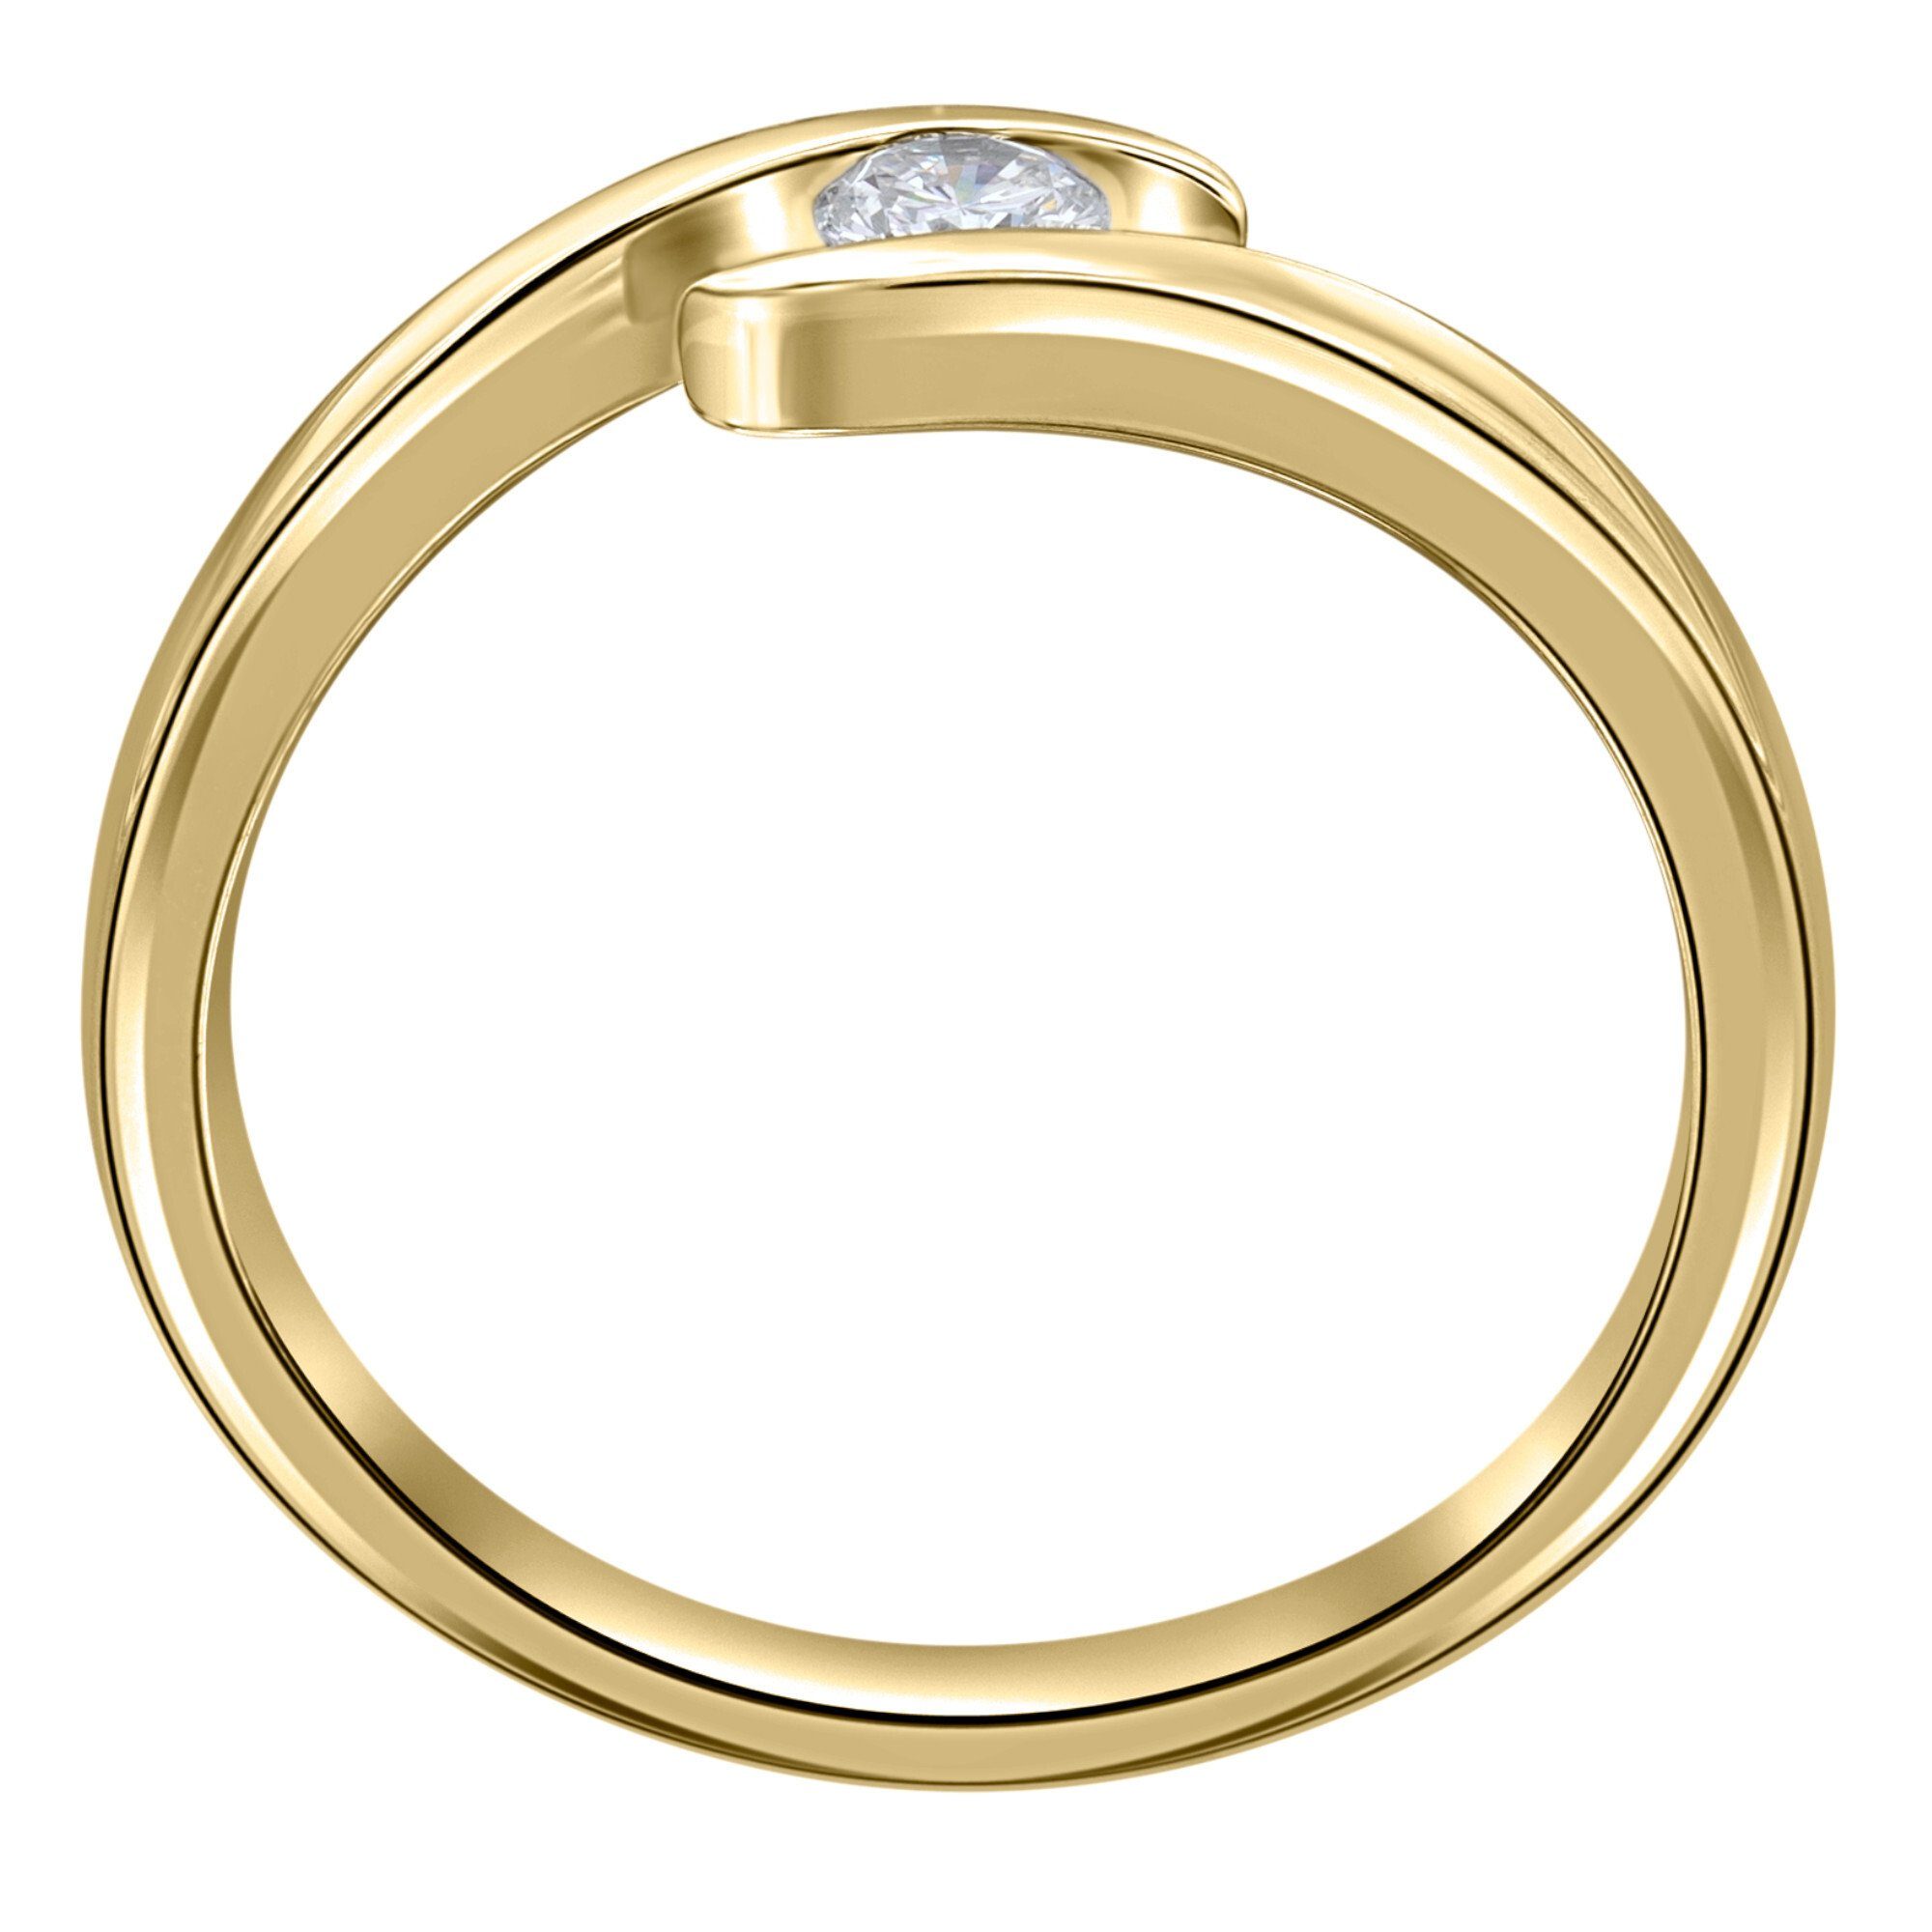 ONE ELEMENT Diamantring 0,25 ct Diamant Brillant Spannfassung Ring aus 585 Gelbgold, Damen Gold Schmuck Spannfassung